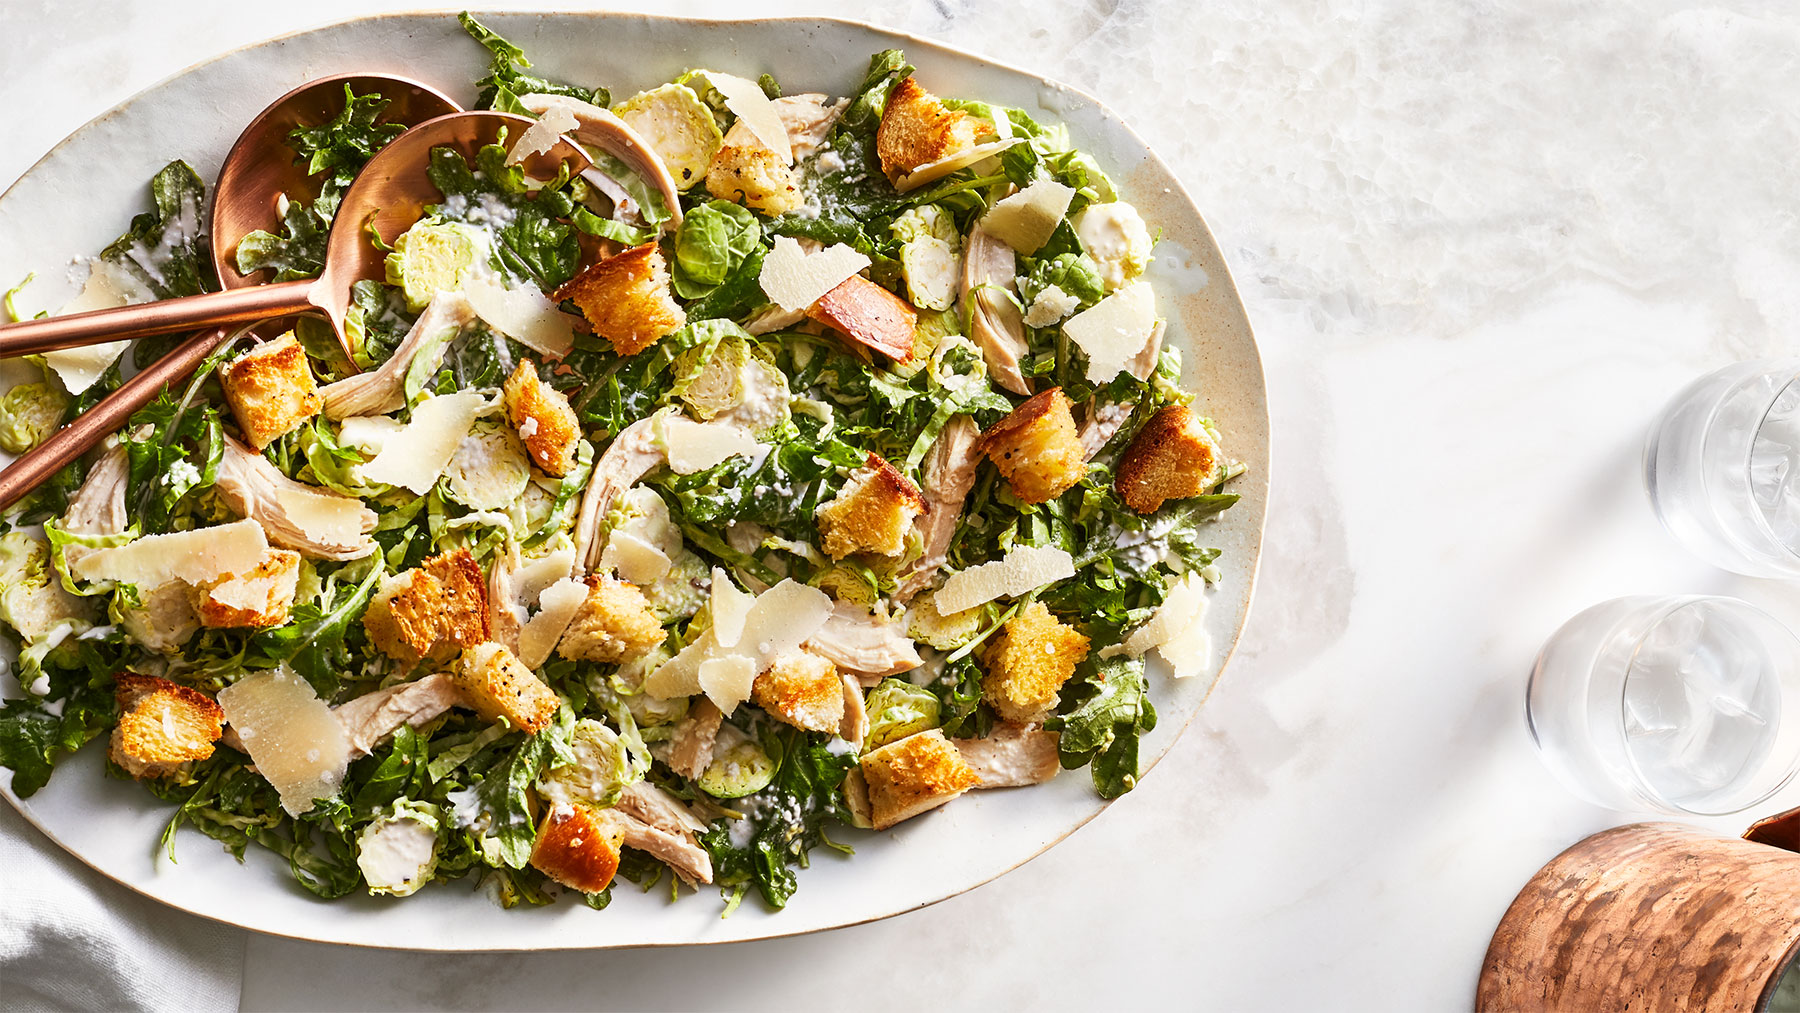 Kale Caesar salad with chicken